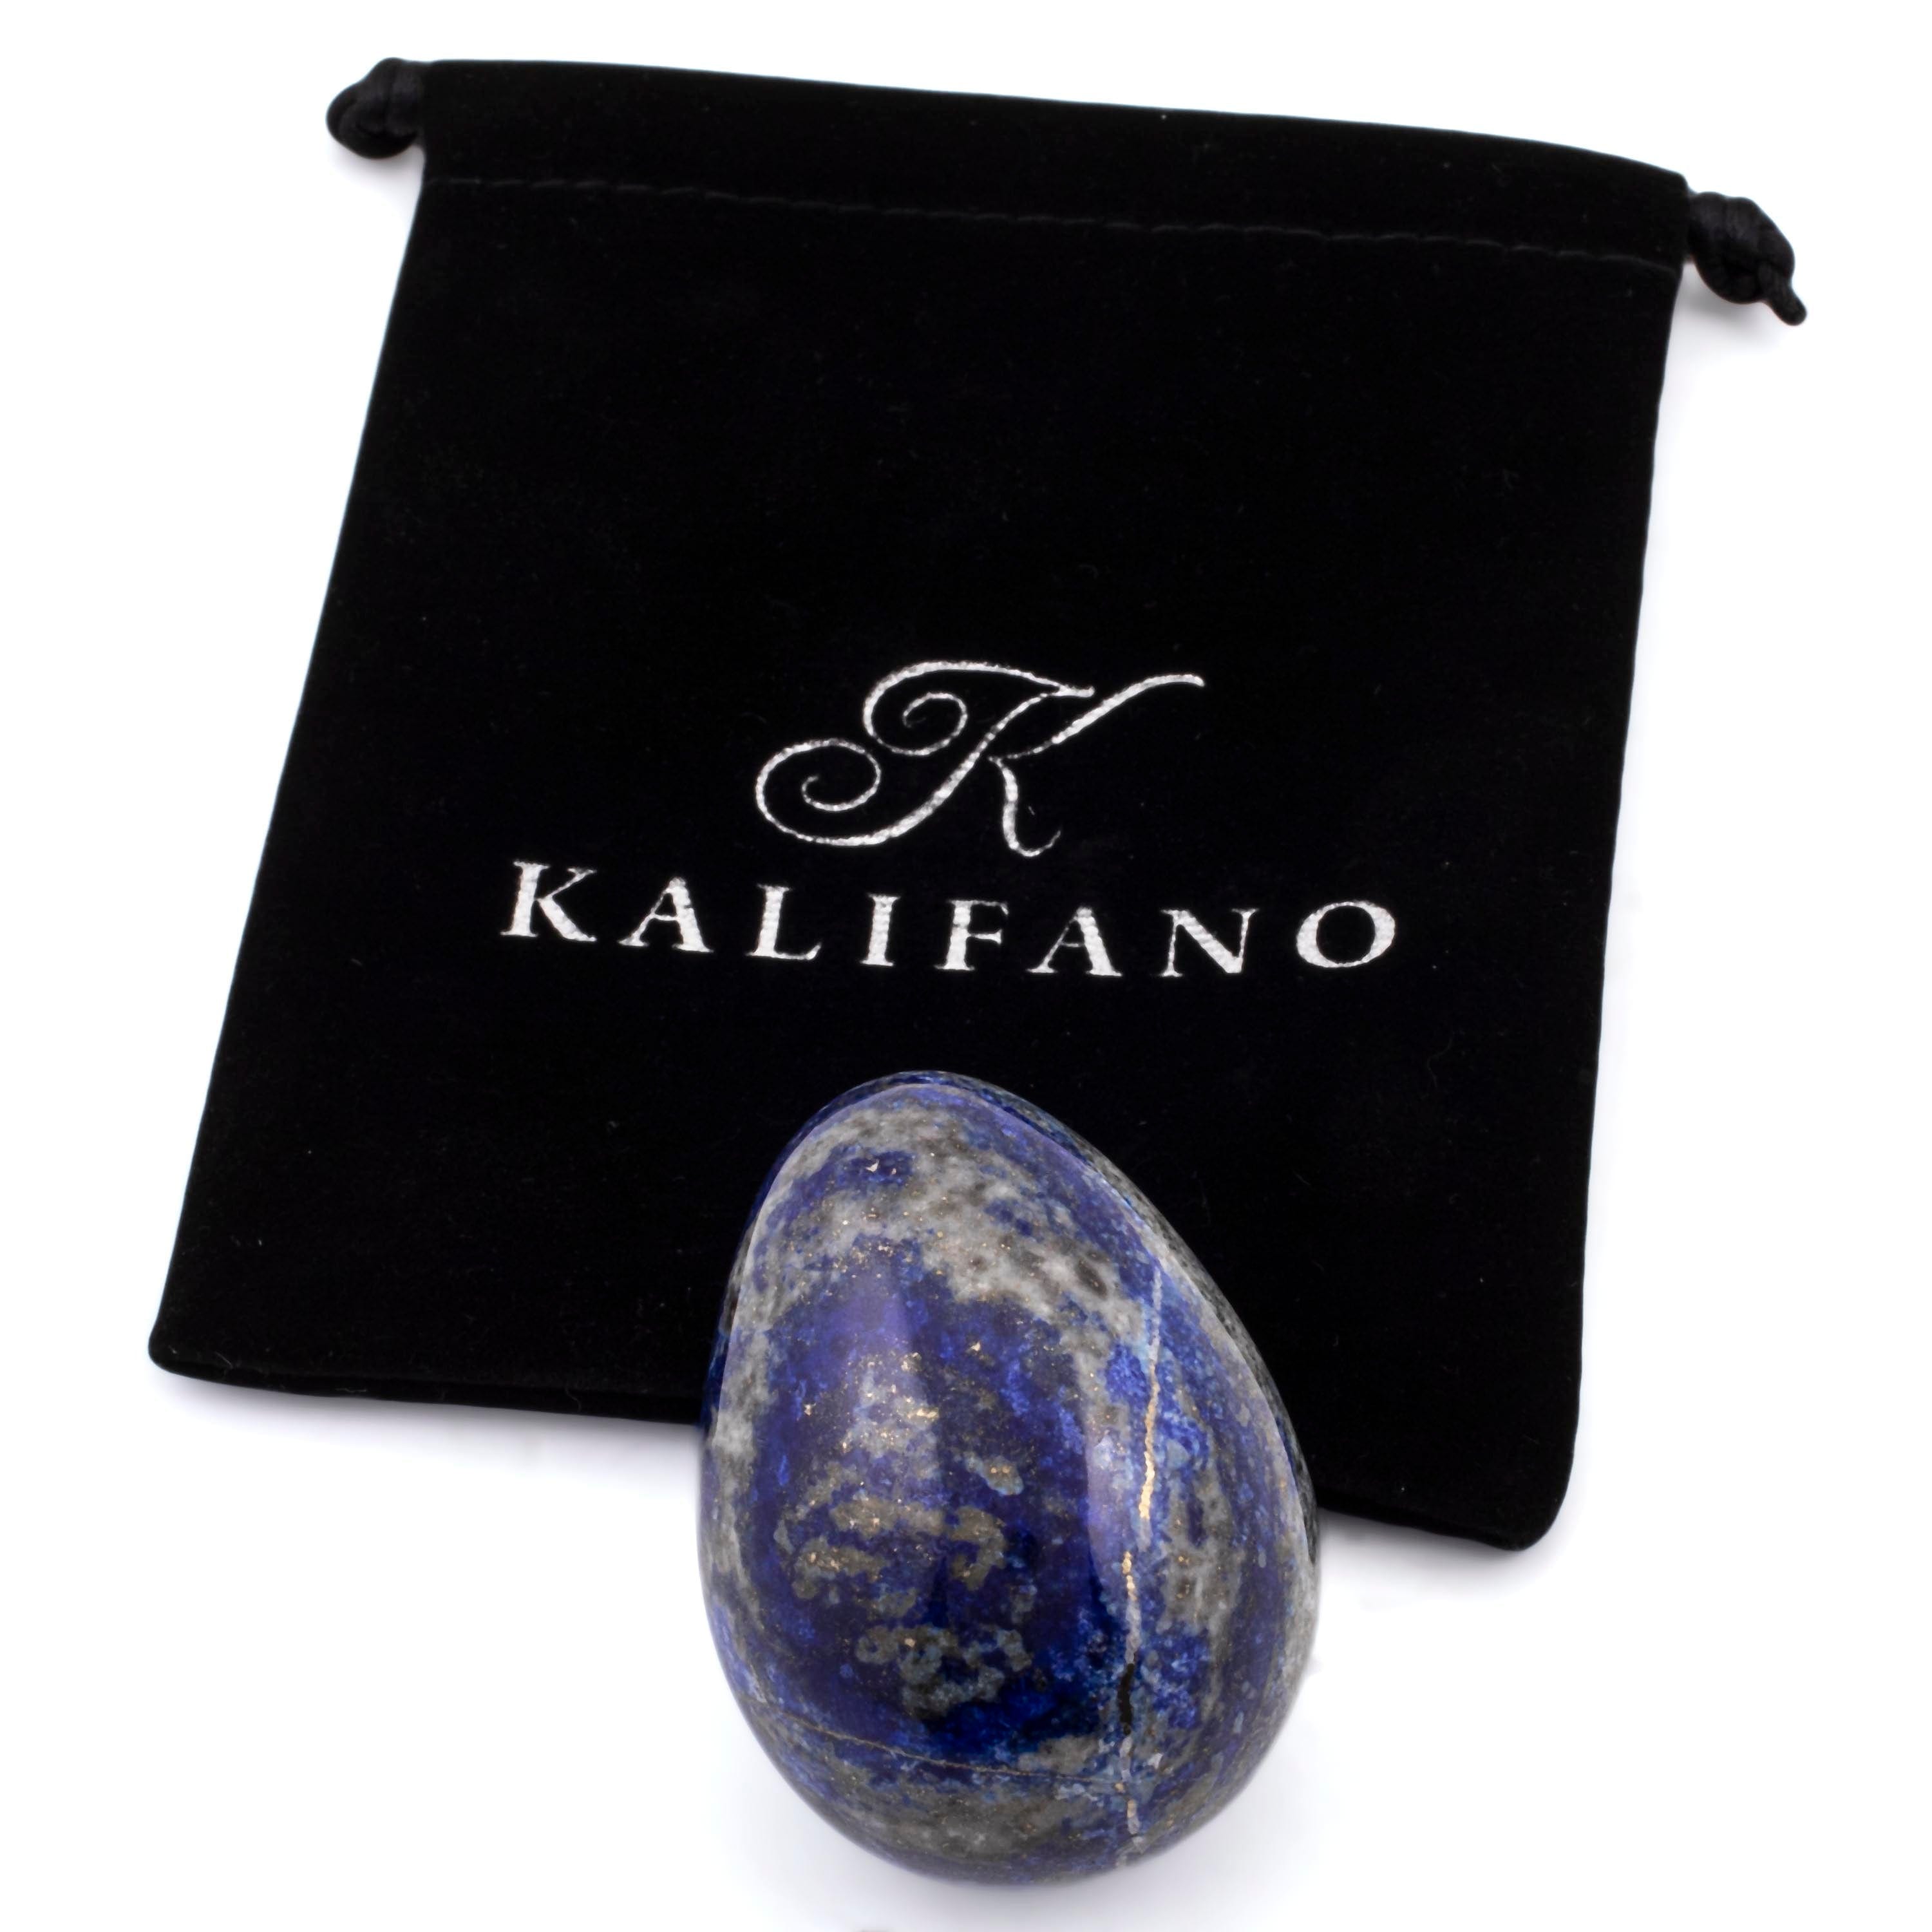 Kalifano Lapis Lapis Lazuli Egg Carving 2 in. / 125 grams LPE160